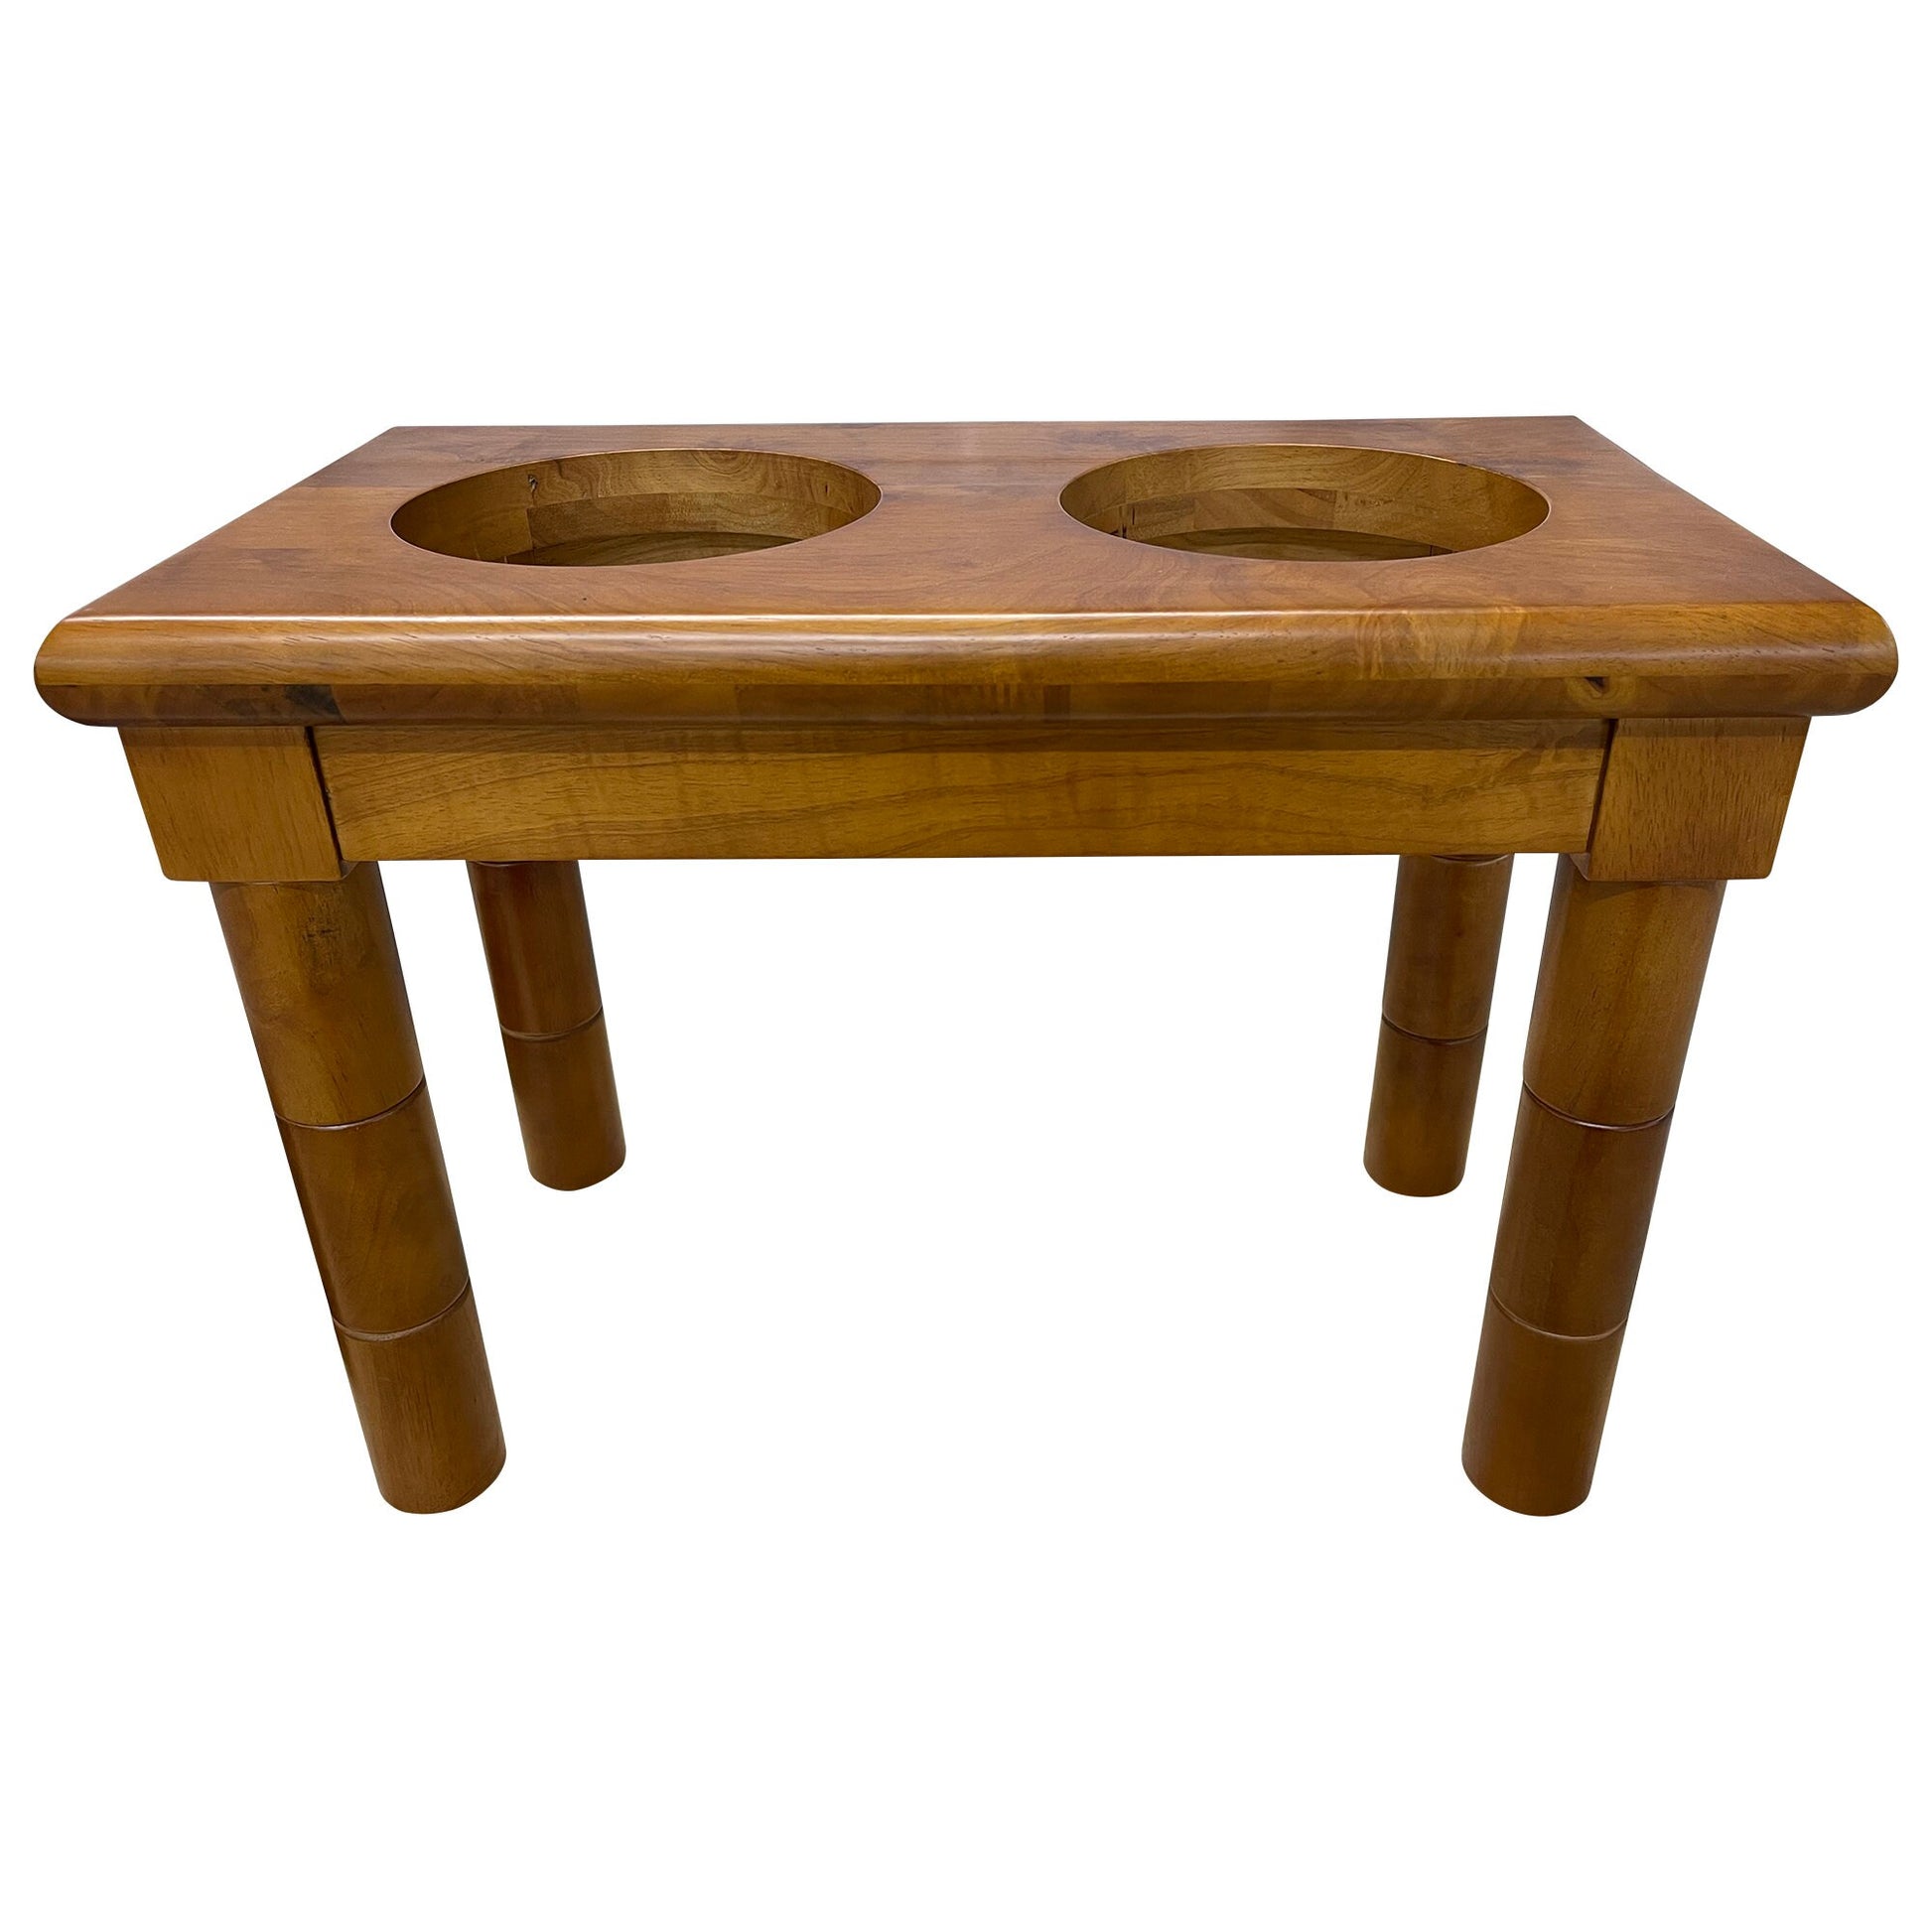 Dog Bowl Stand (Bowls Included) – Teal Magnolia Workshop